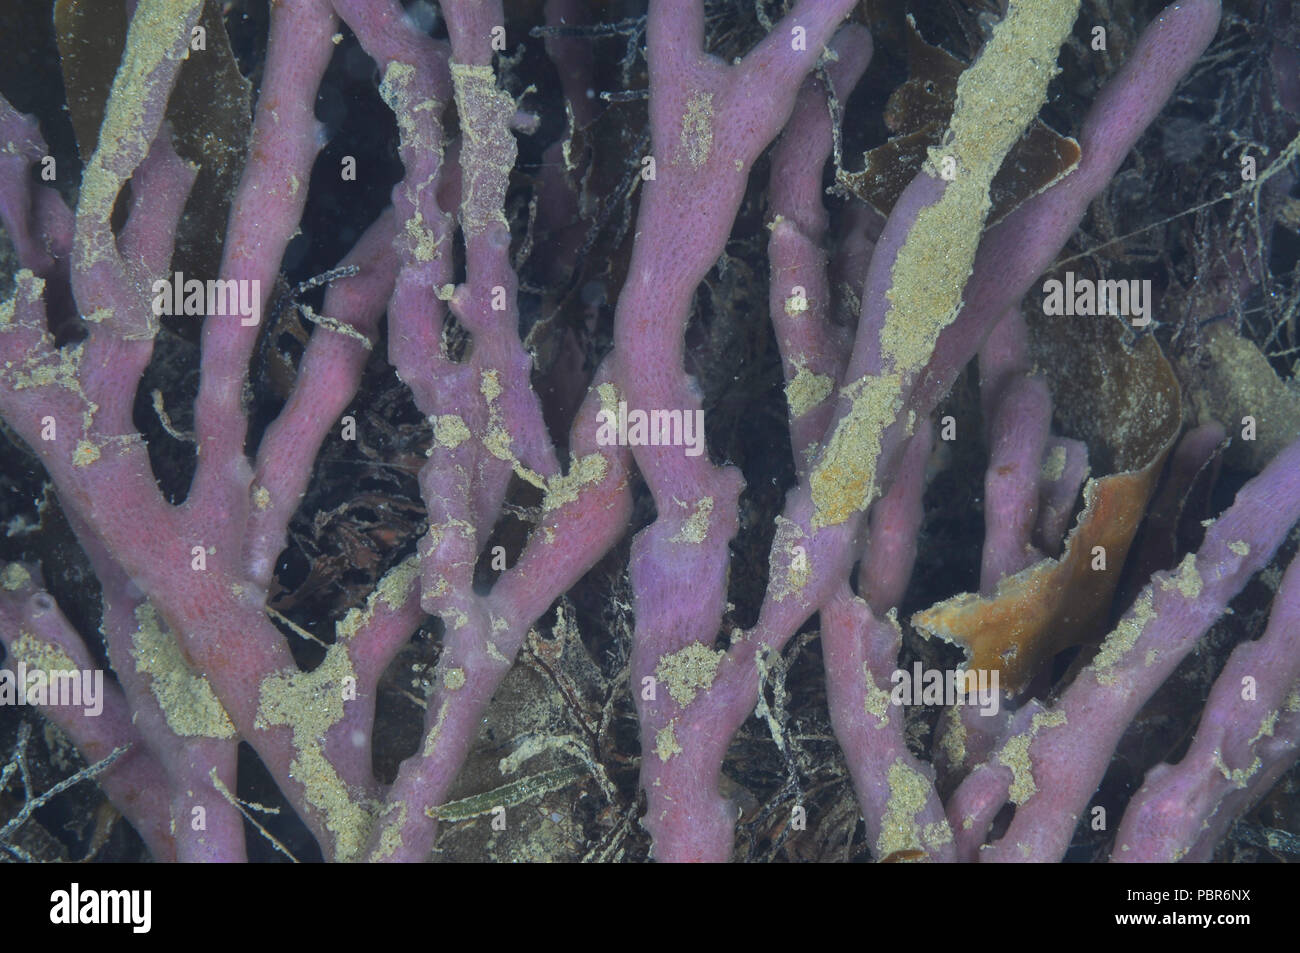 Détail d'un grand buisson o doigt violet marron éponge parmi les mauvaises herbes dans les eaux peu profondes de la mer, il a été détaché du fond, partiellement recouverte d'une couche de so Banque D'Images